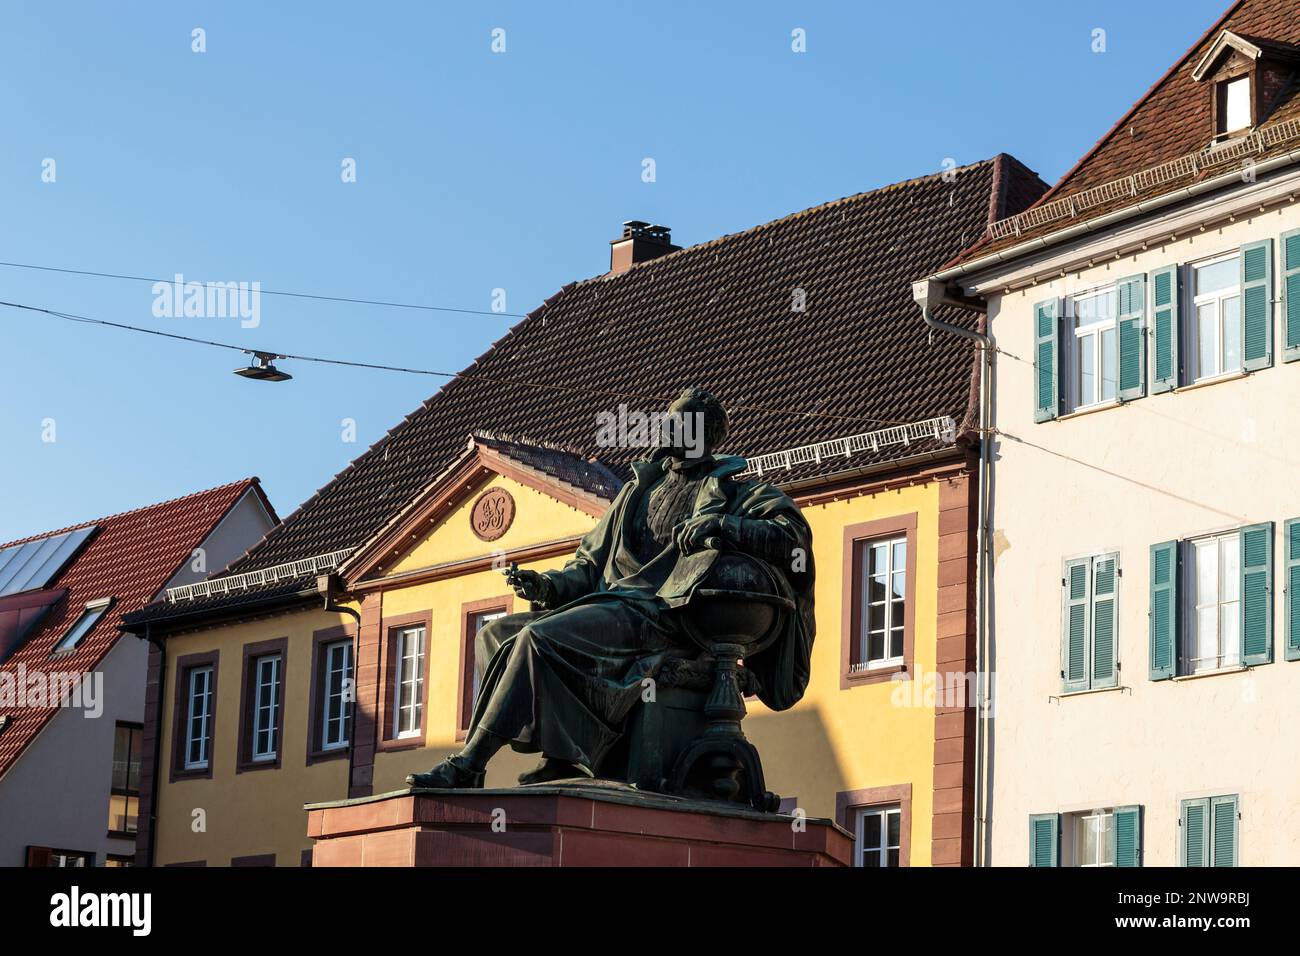 Denkmal des berühmten Astronomen und Mathematikers Johannes Kepler, 1870 in weil der Stadt errichtet Stockfoto